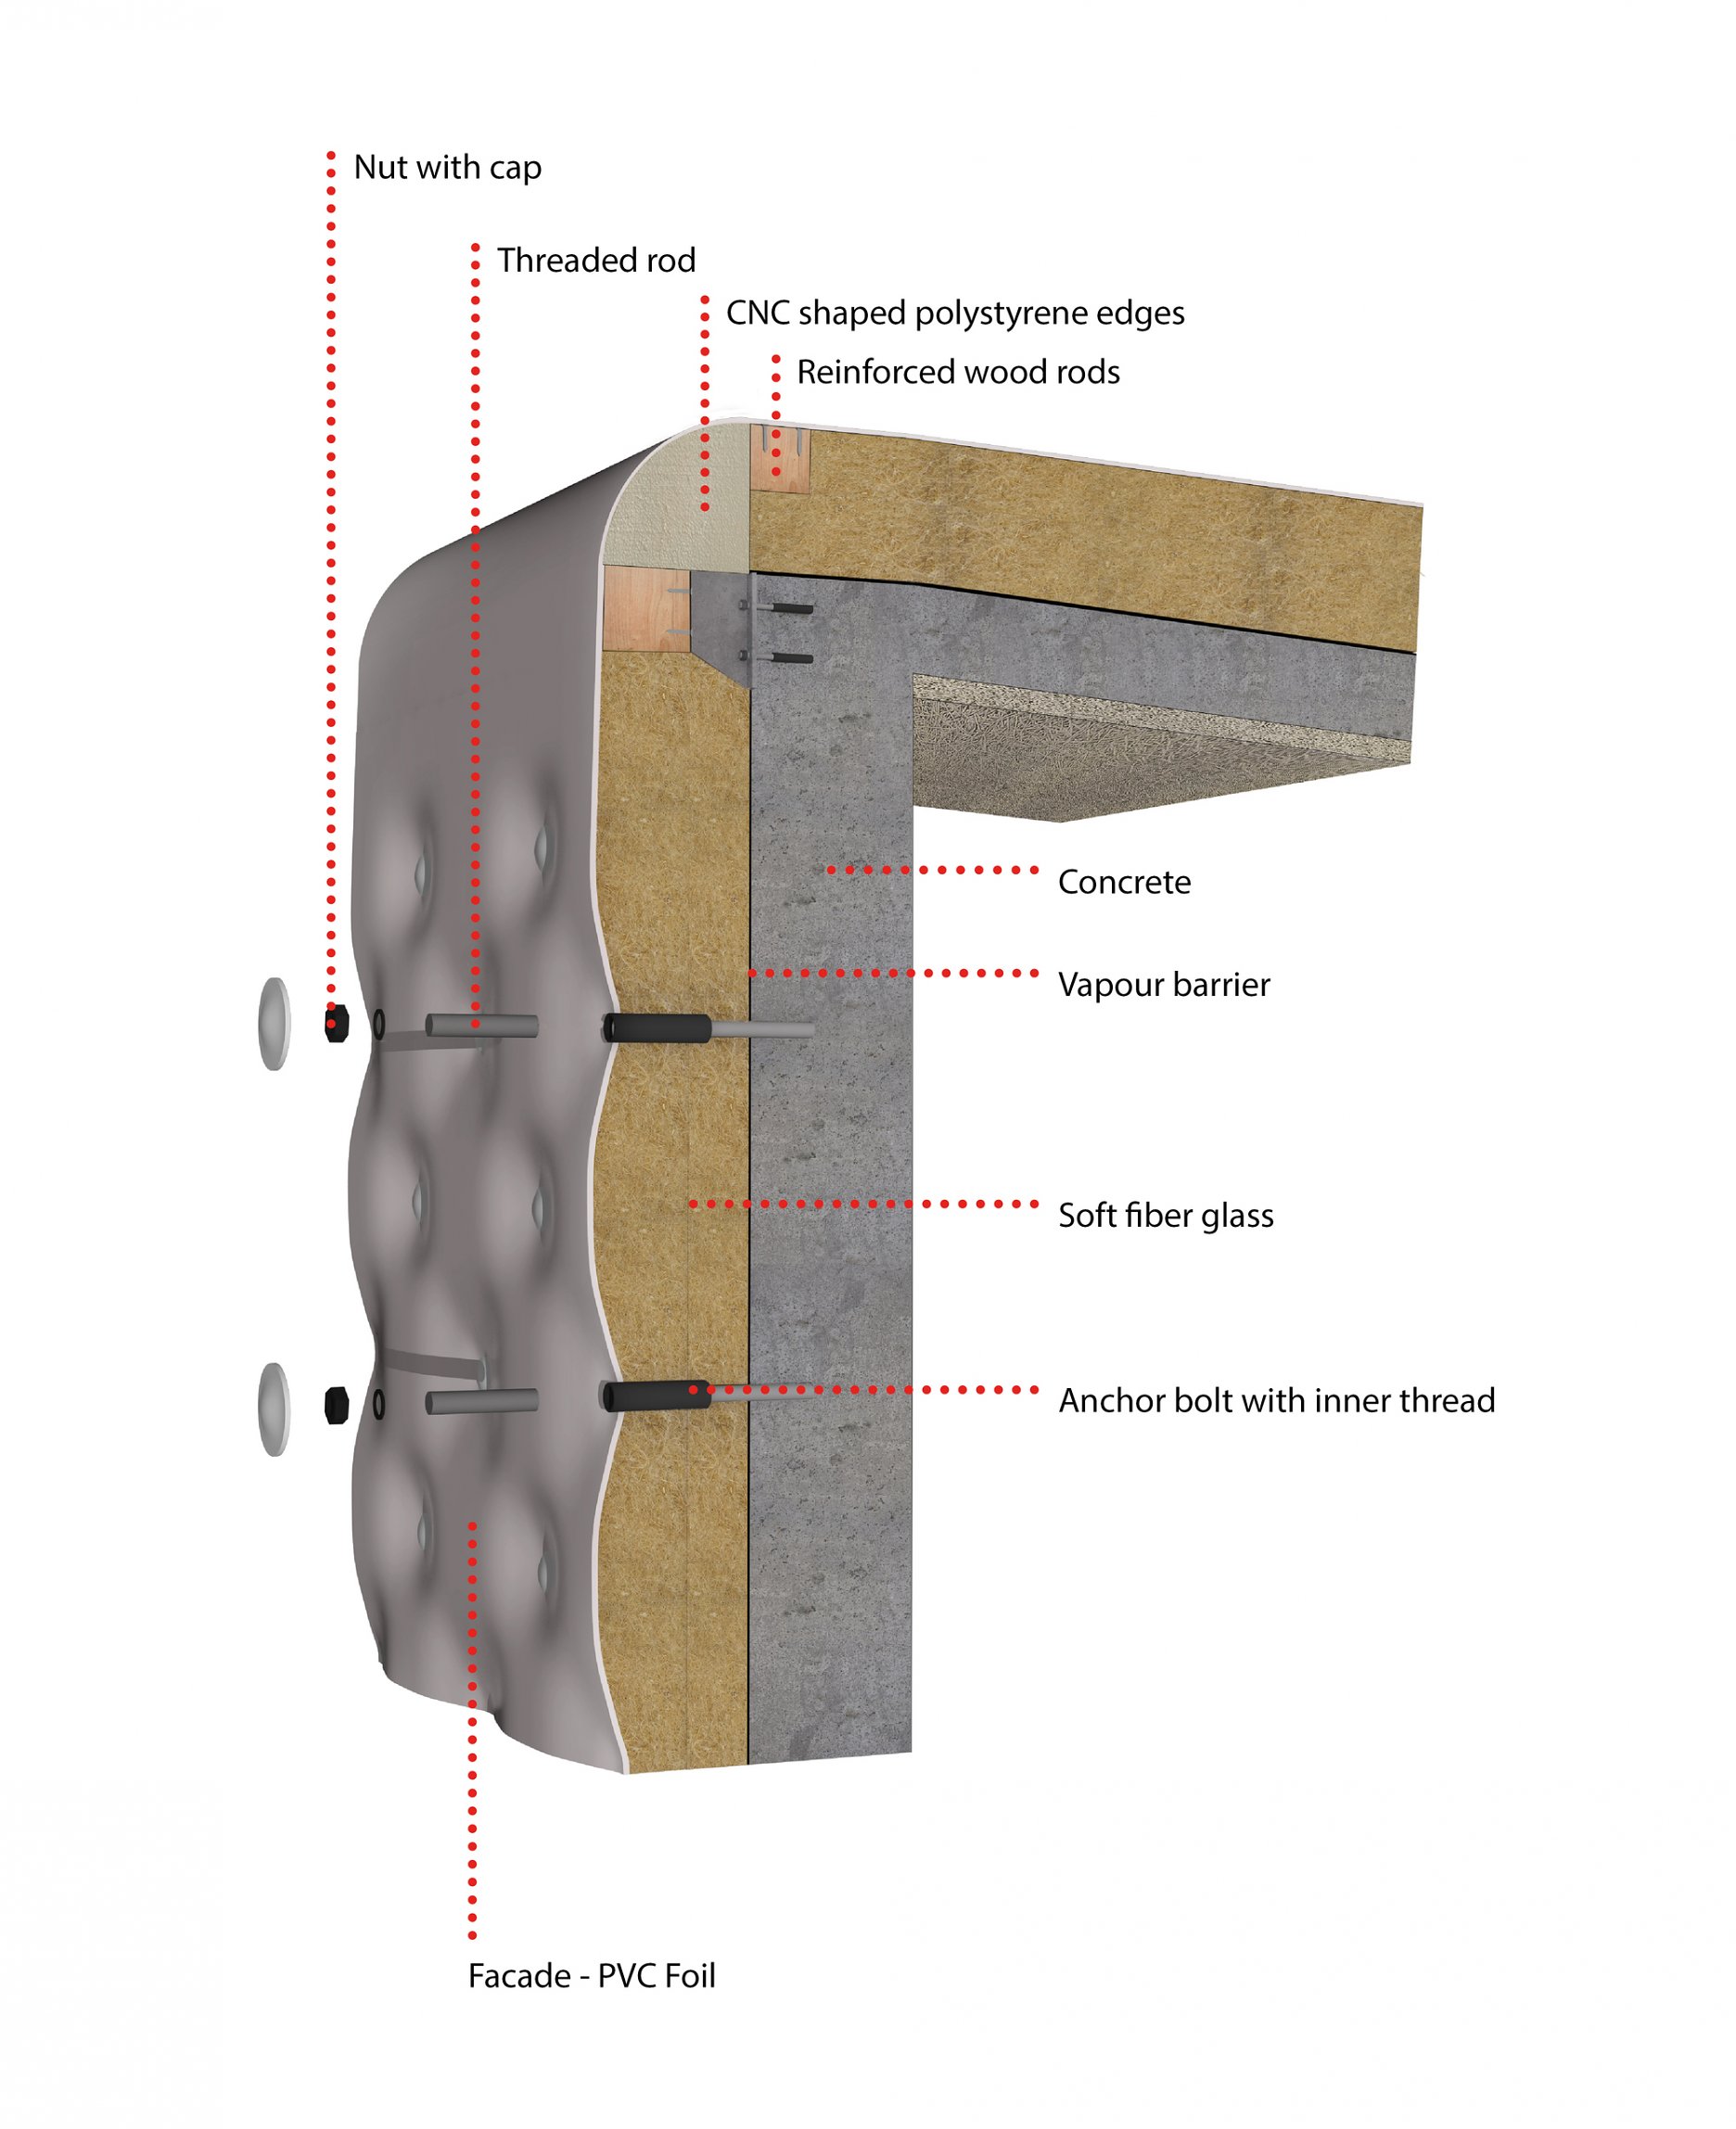 Detail - PVC fólia ako finálna pohľadová vrstva